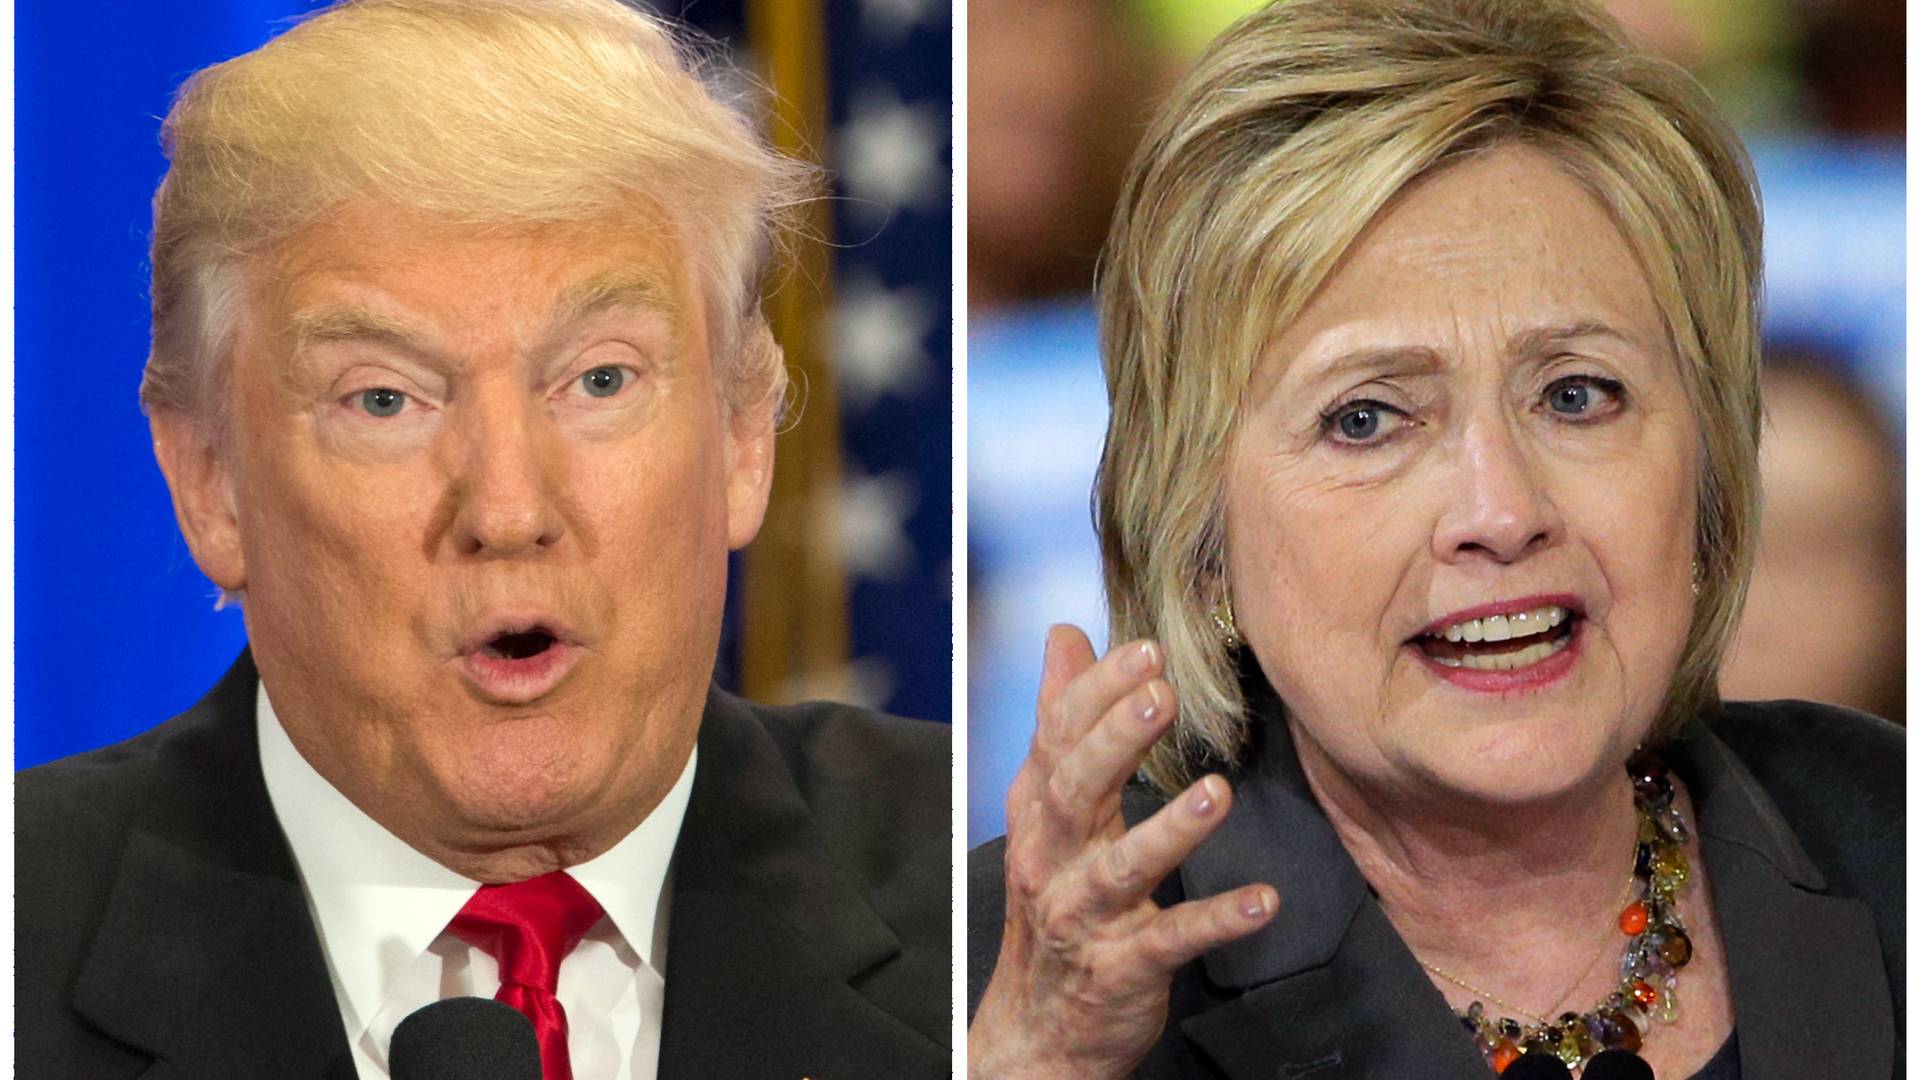 Trump potvrdený, prvý duel s Clintonovou už v septembri